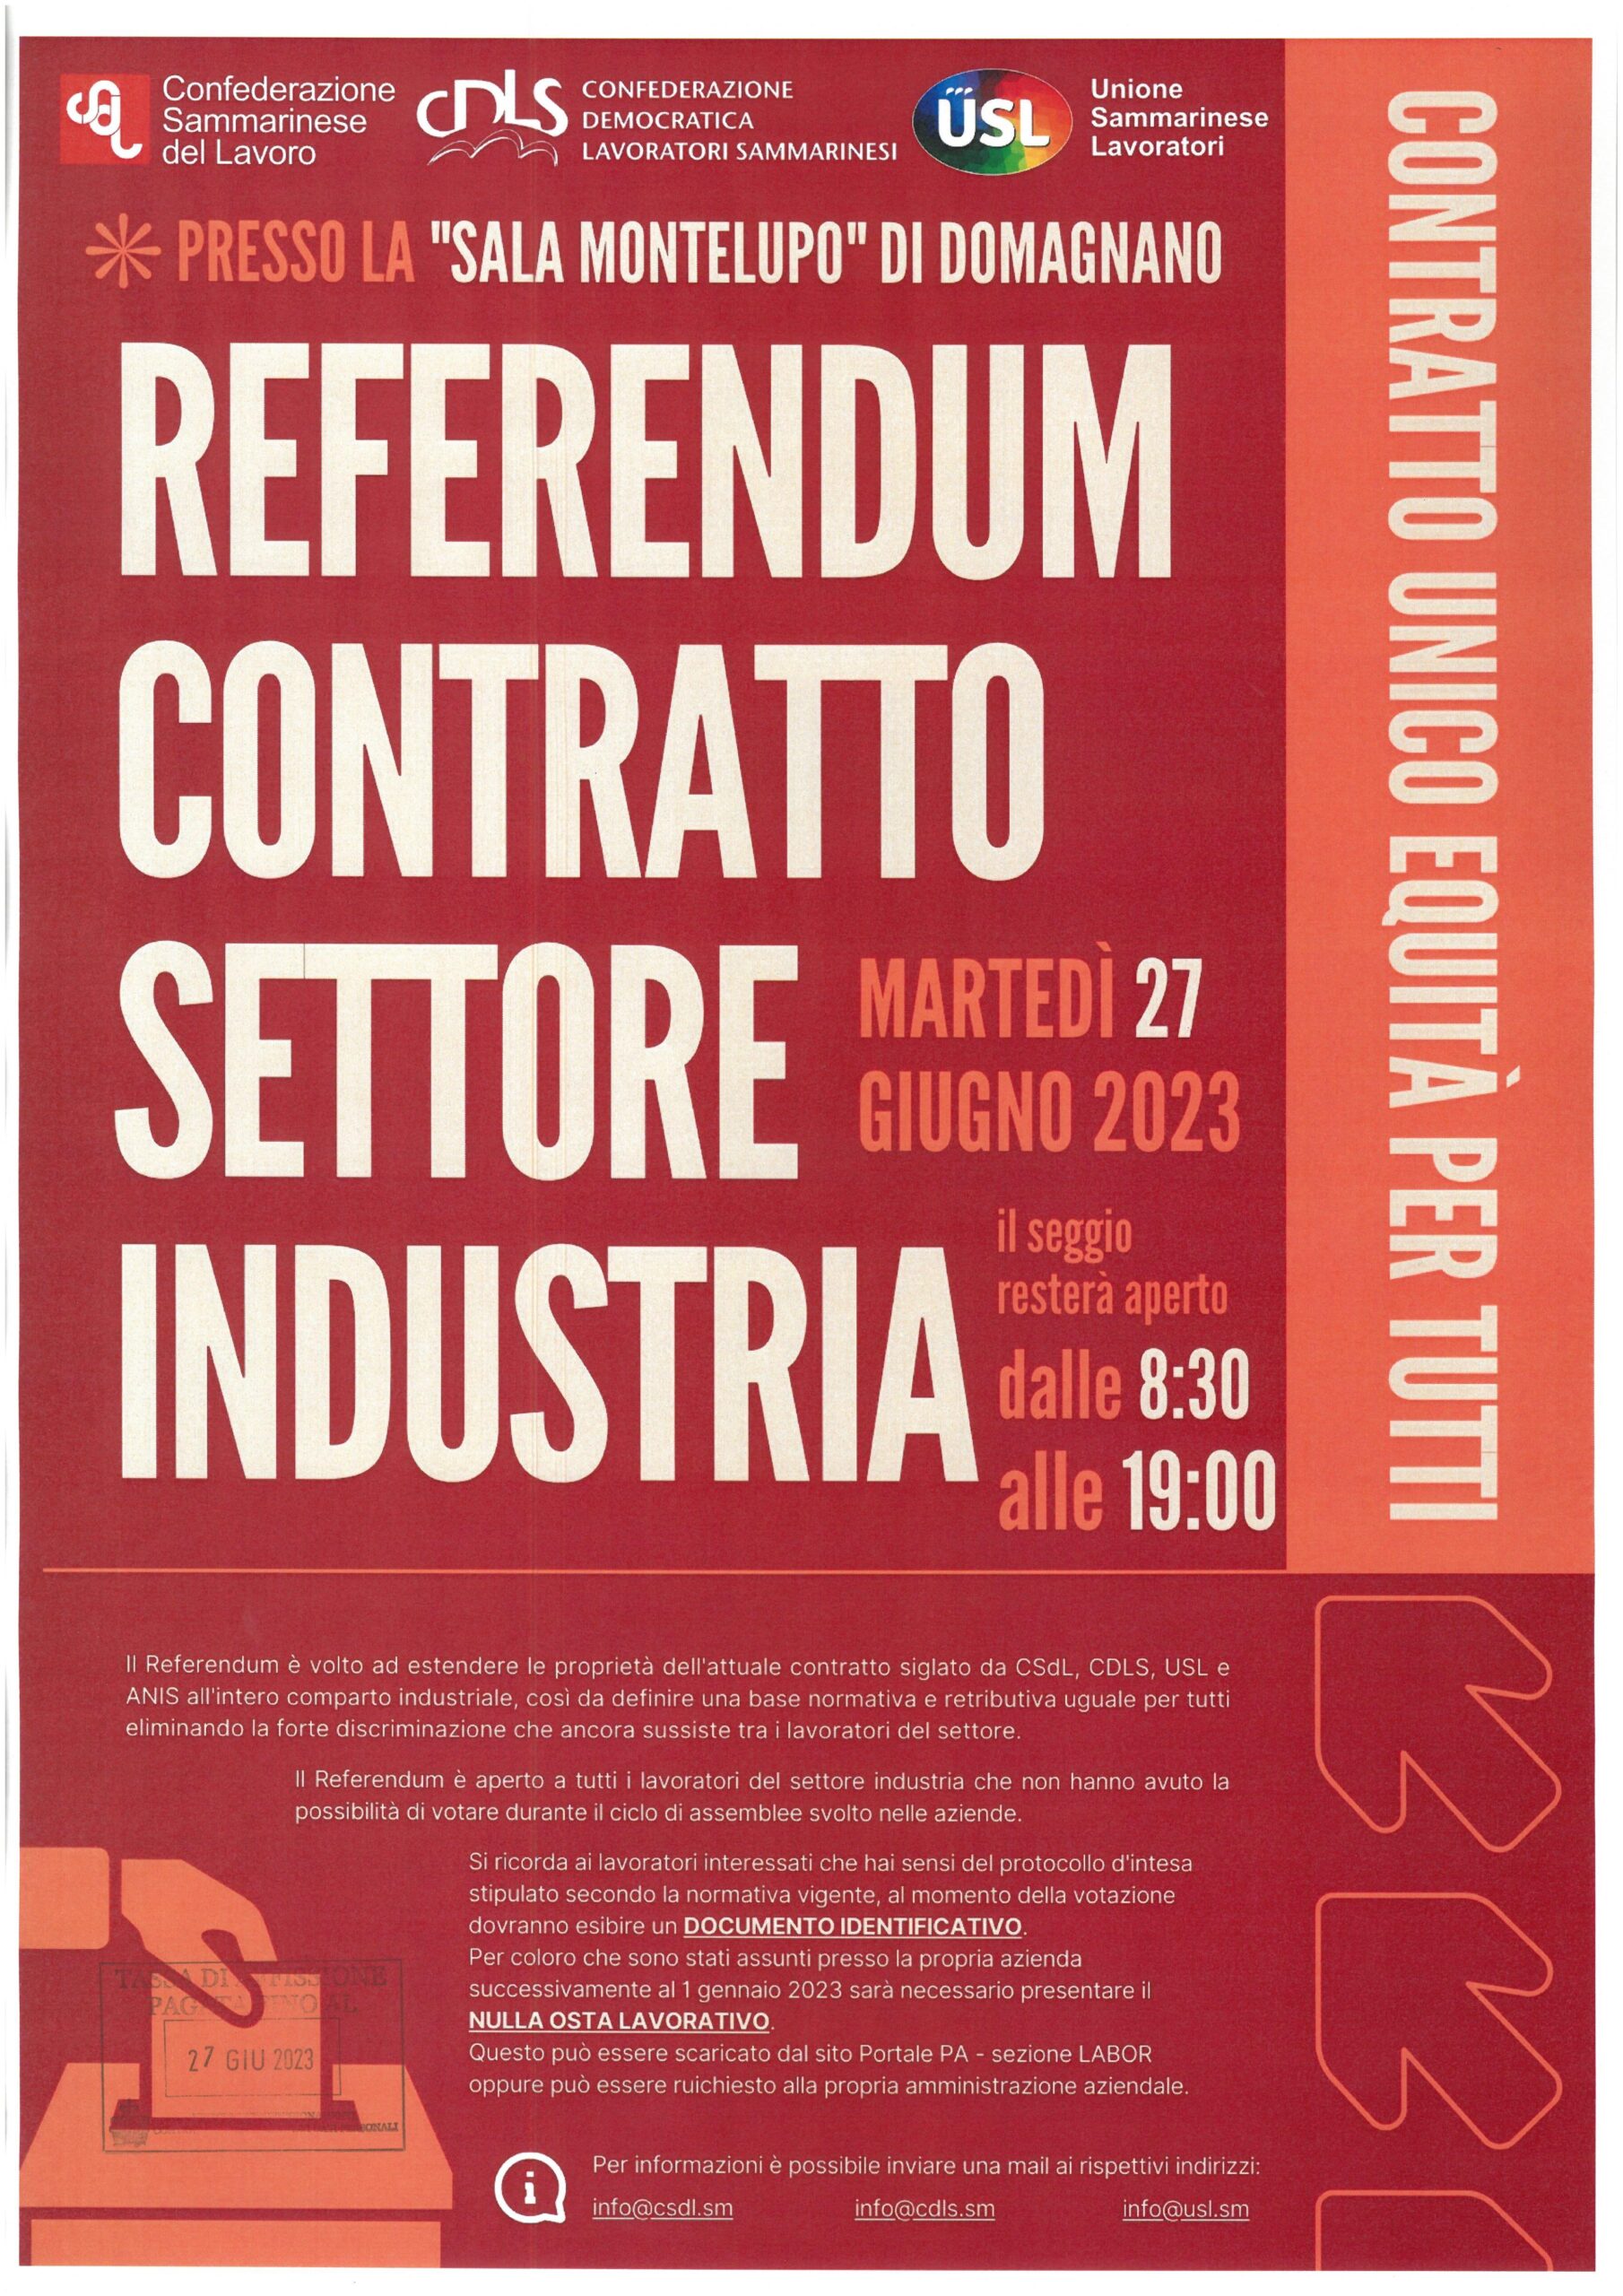 San Marino. Federazione Pubblico Impiego: “Referendum contratto industria ultimo atto: assemblea conclusiva martedì 27 giugno”